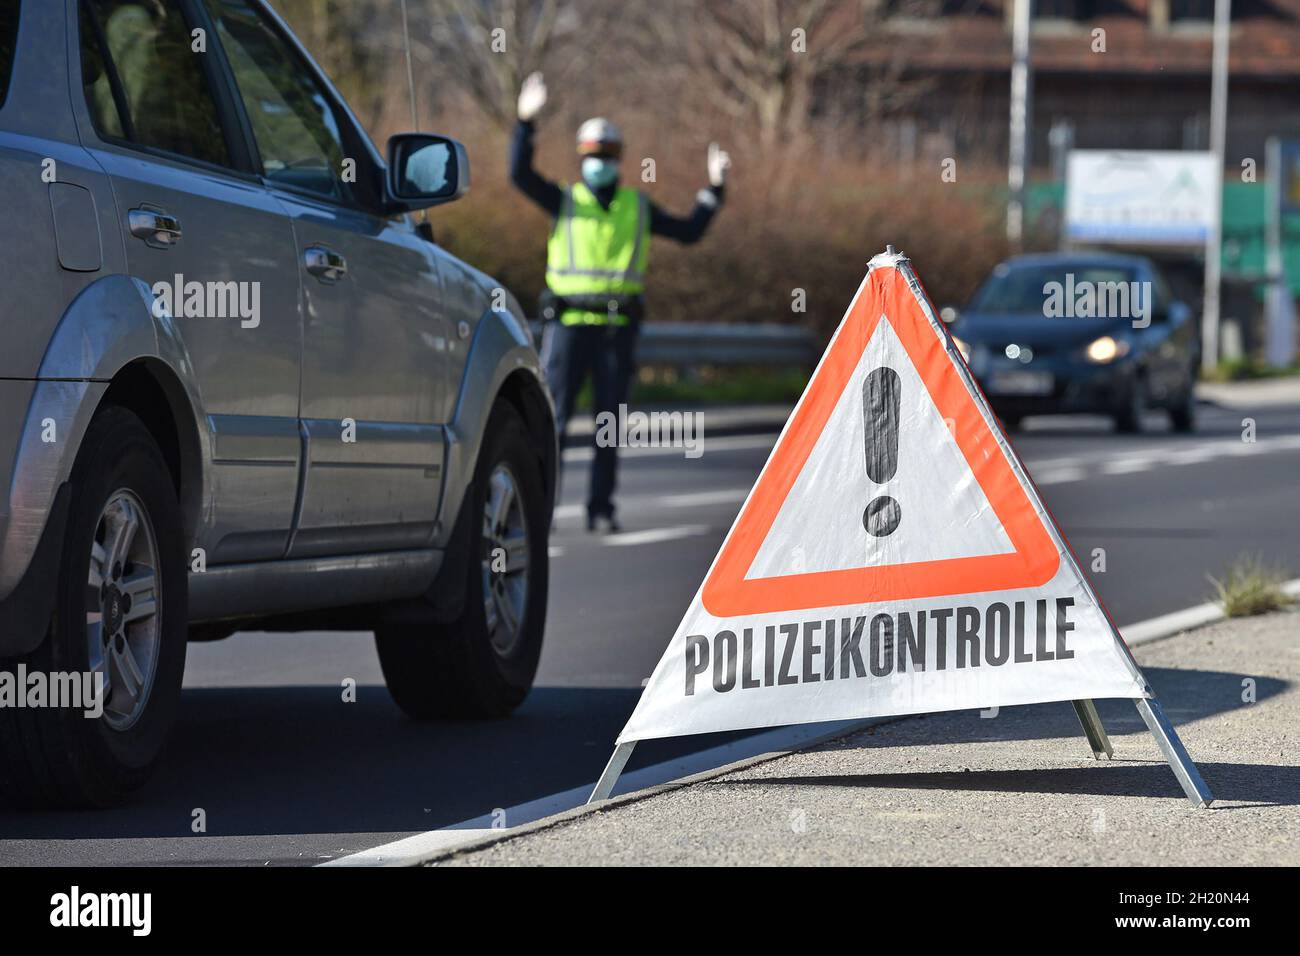 Corona-Krise - Polizei-Kontrollen - Die Ausgangsbeschränkungen werden in Österreich von der Polizei kontrolliert (Bezirk Gmunden, Oberösterreich, Öste Stock Photo